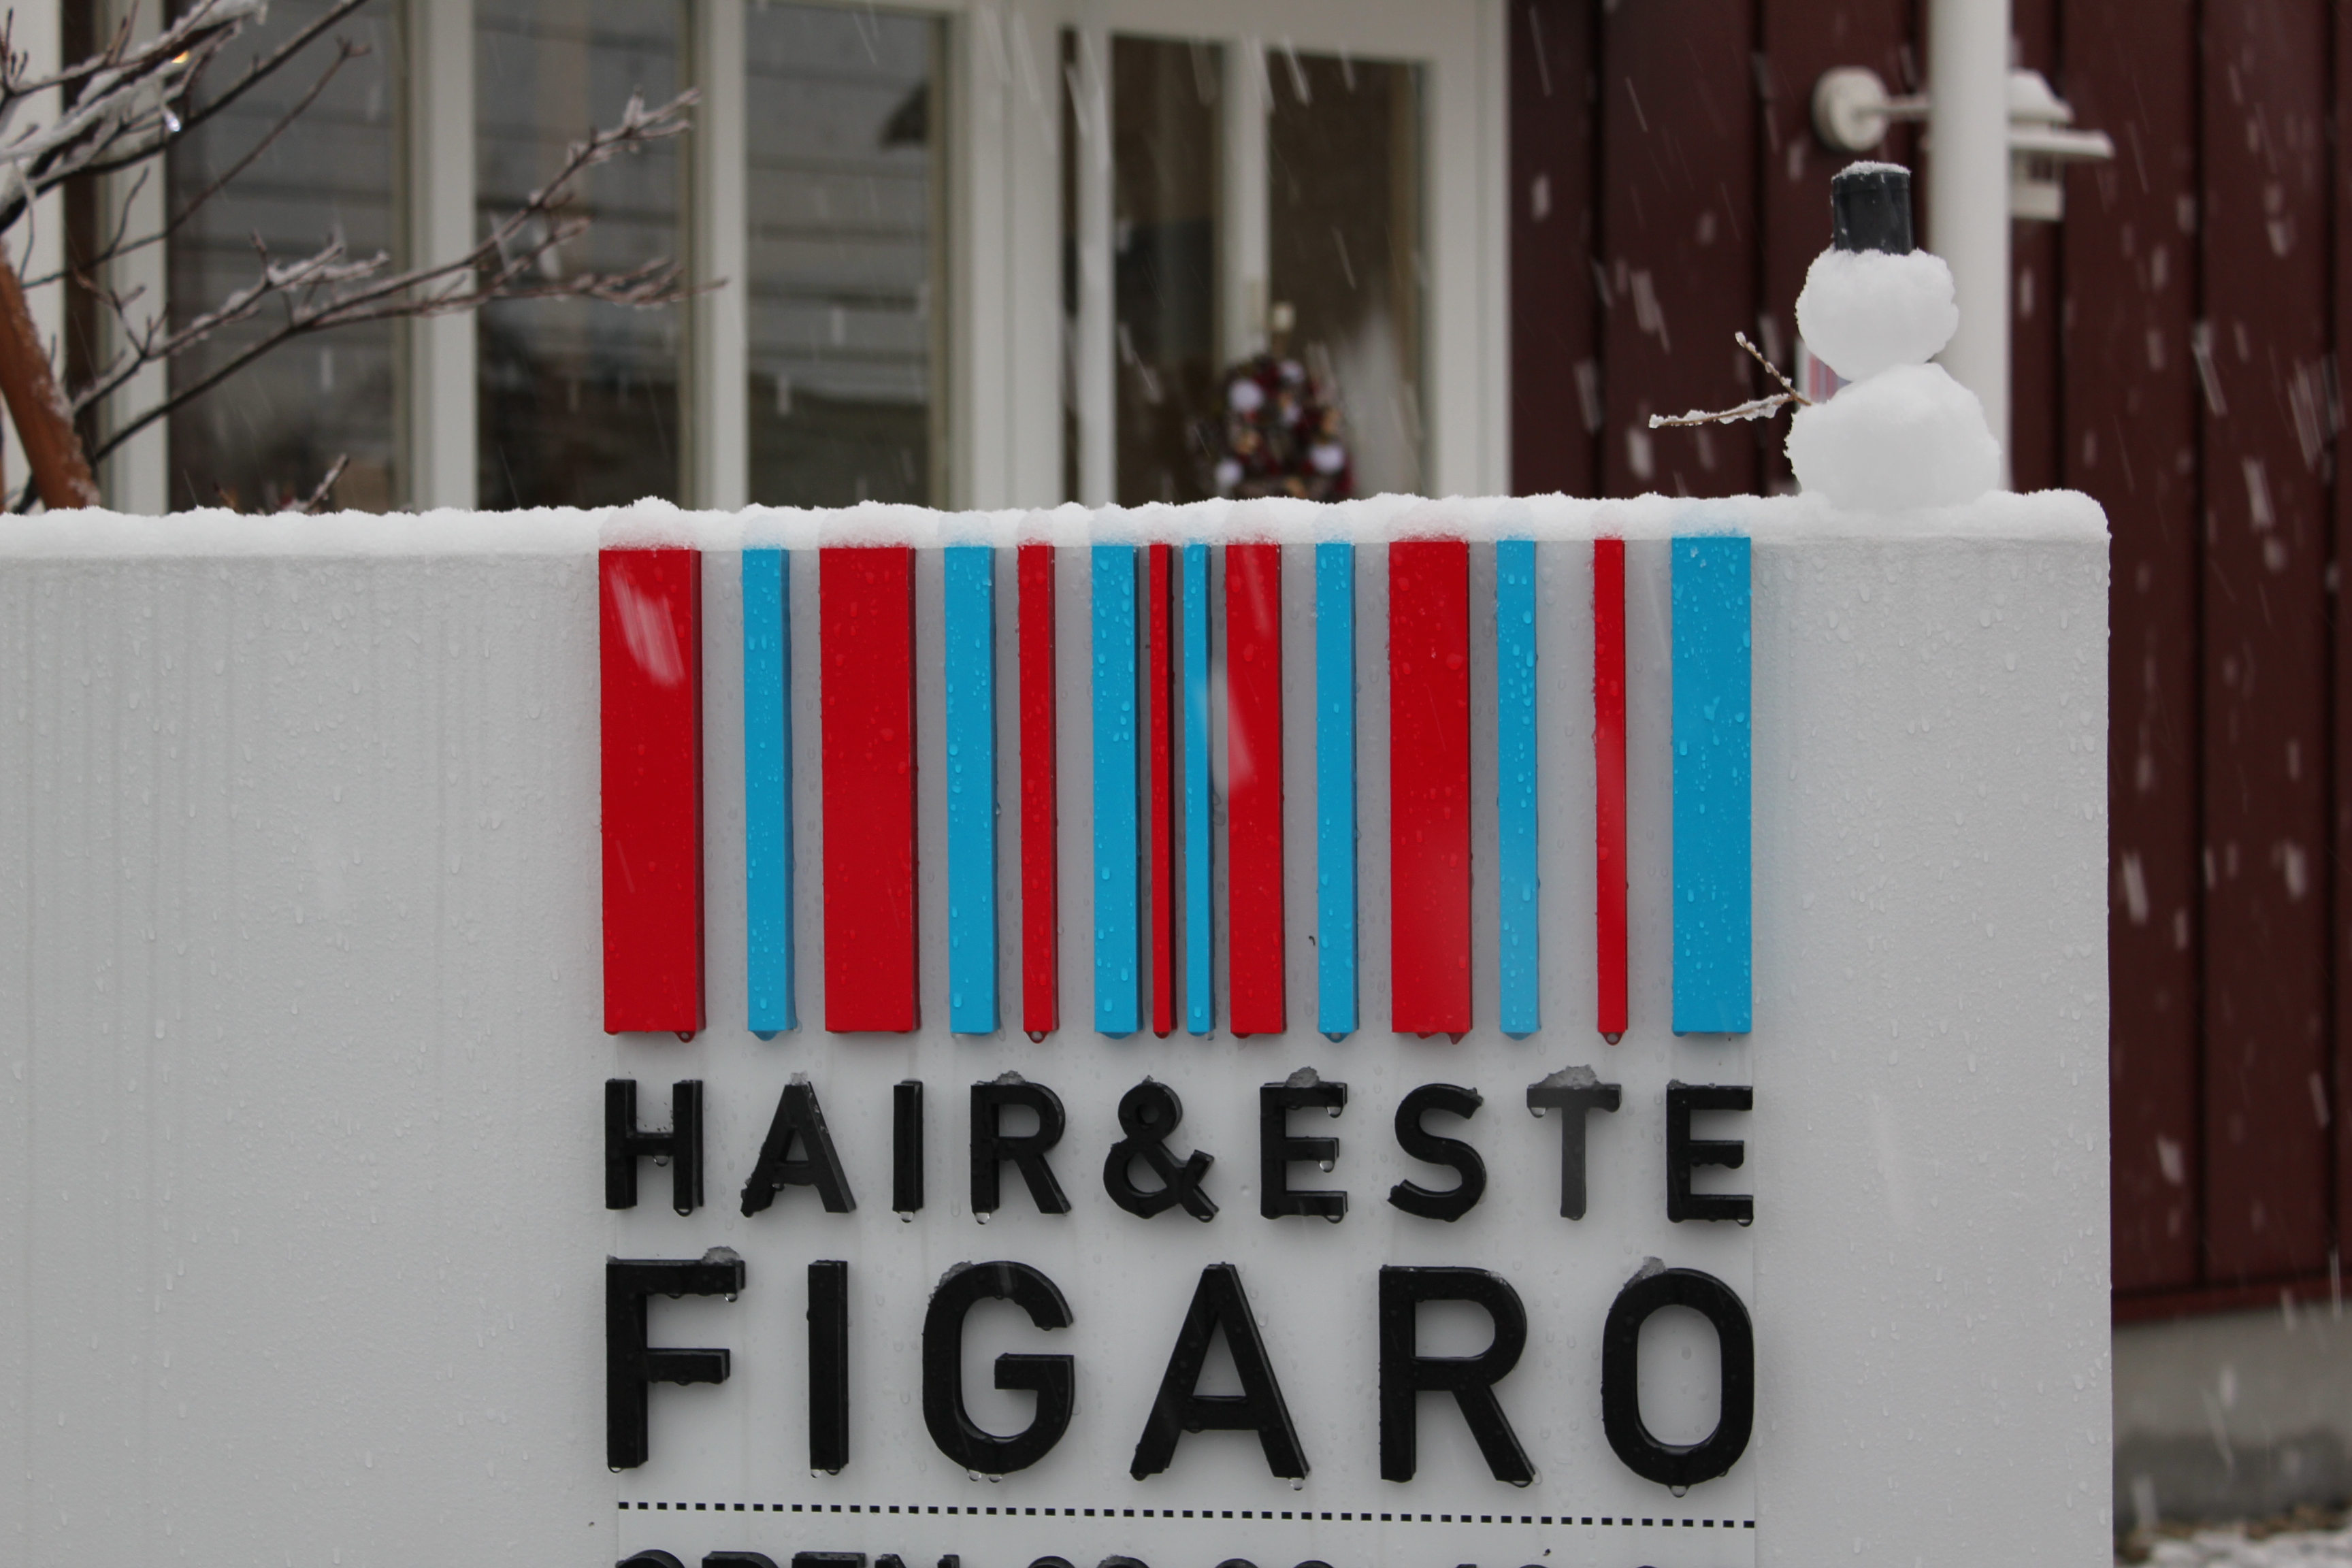 http://figaro-hair.com/blog/IMG_2474.JPG